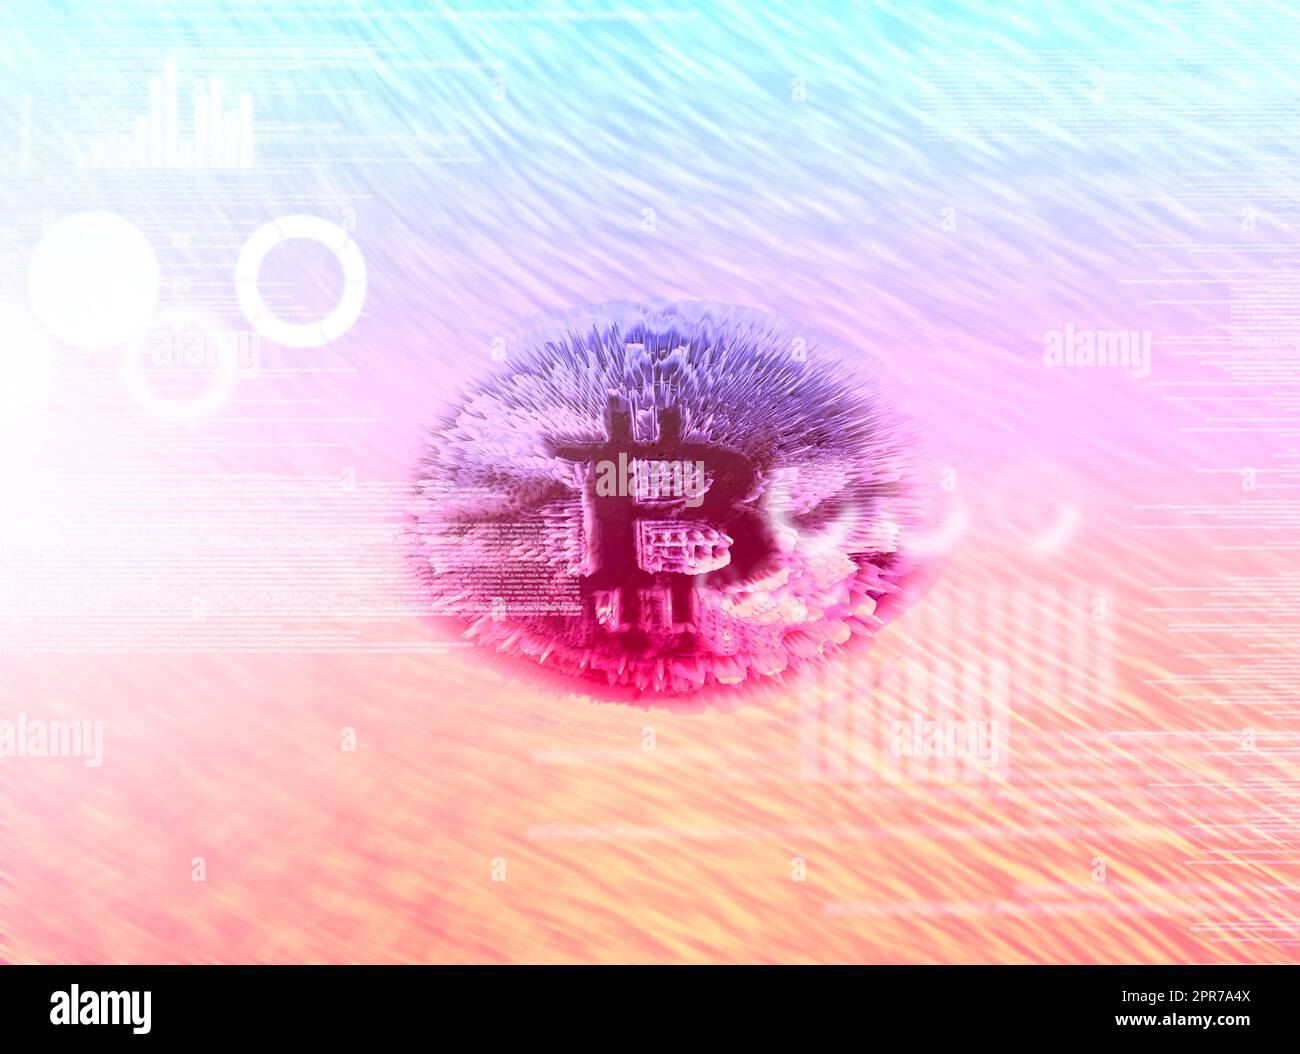 Le monde est en train de changer. Image conceptuelle d'un modèle numérique d'un bitcoin unique sur un arrière-plan lumineux. Banque D'Images